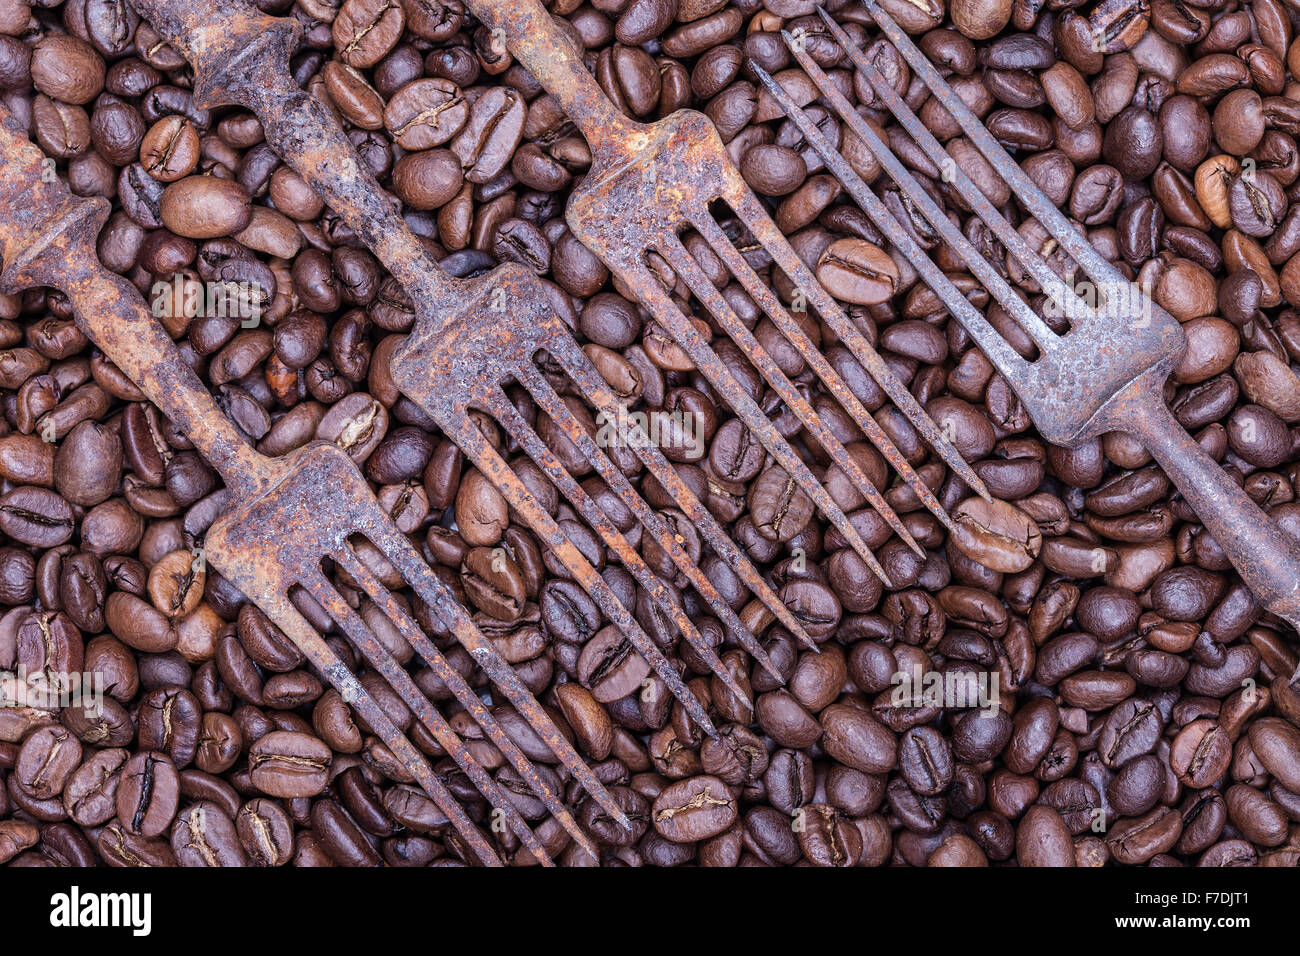 Les grains de café et old rusty forks abstract still life Banque D'Images